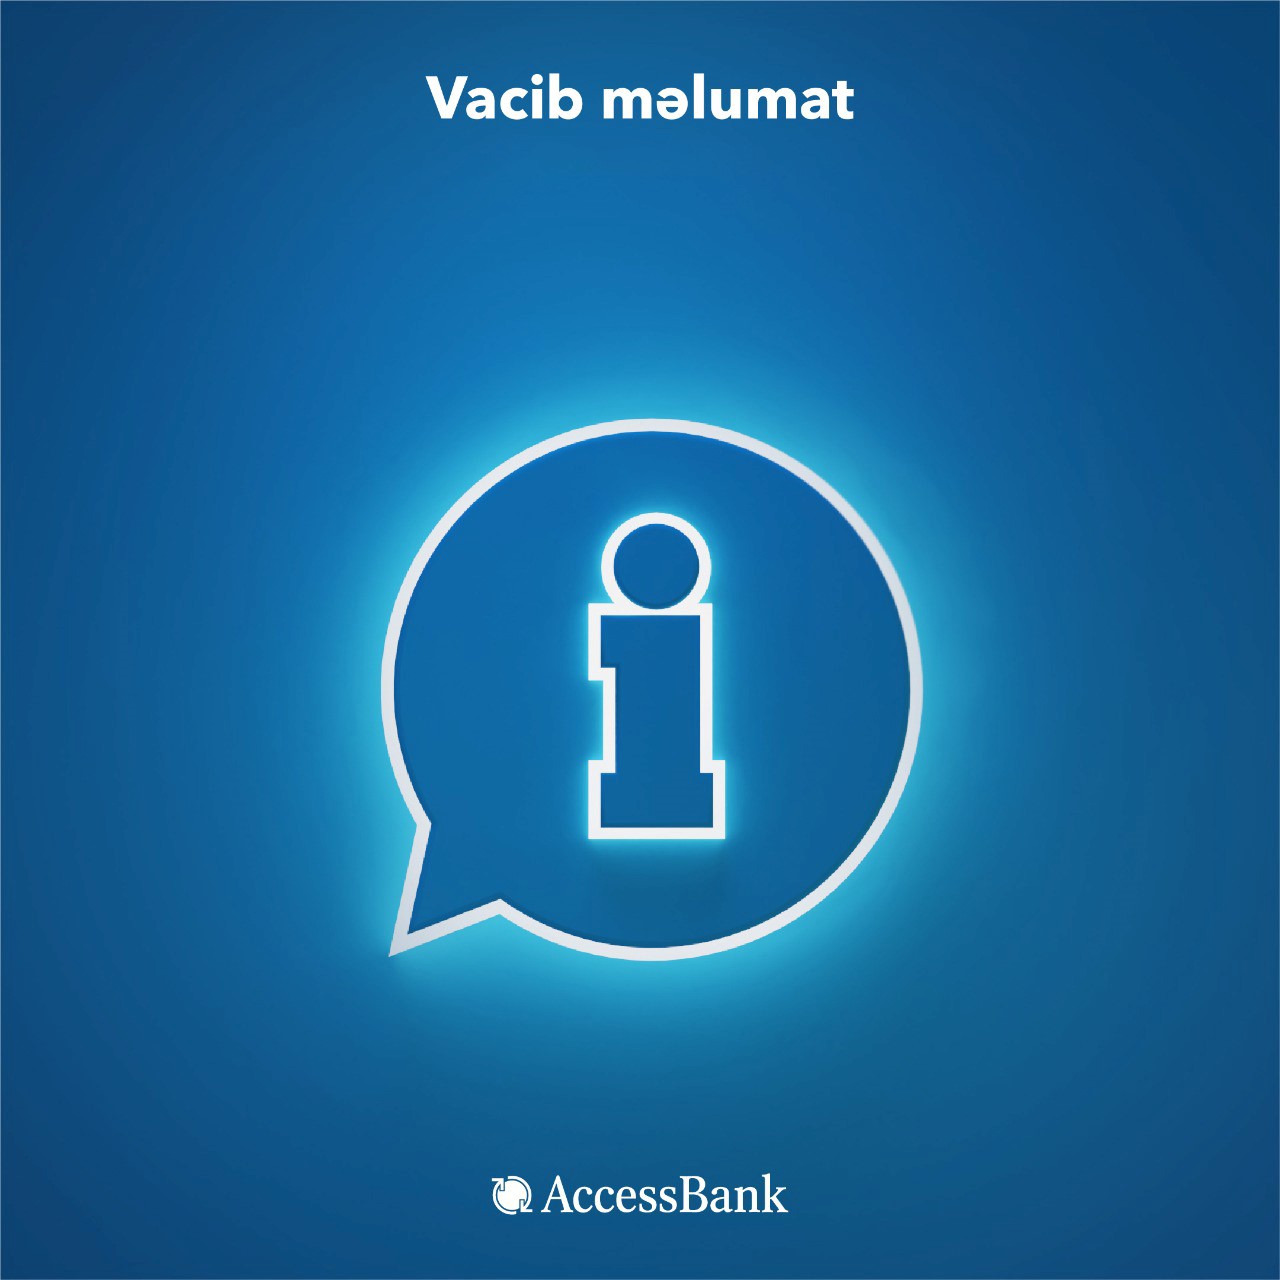 К сведению клиентов AccessBank